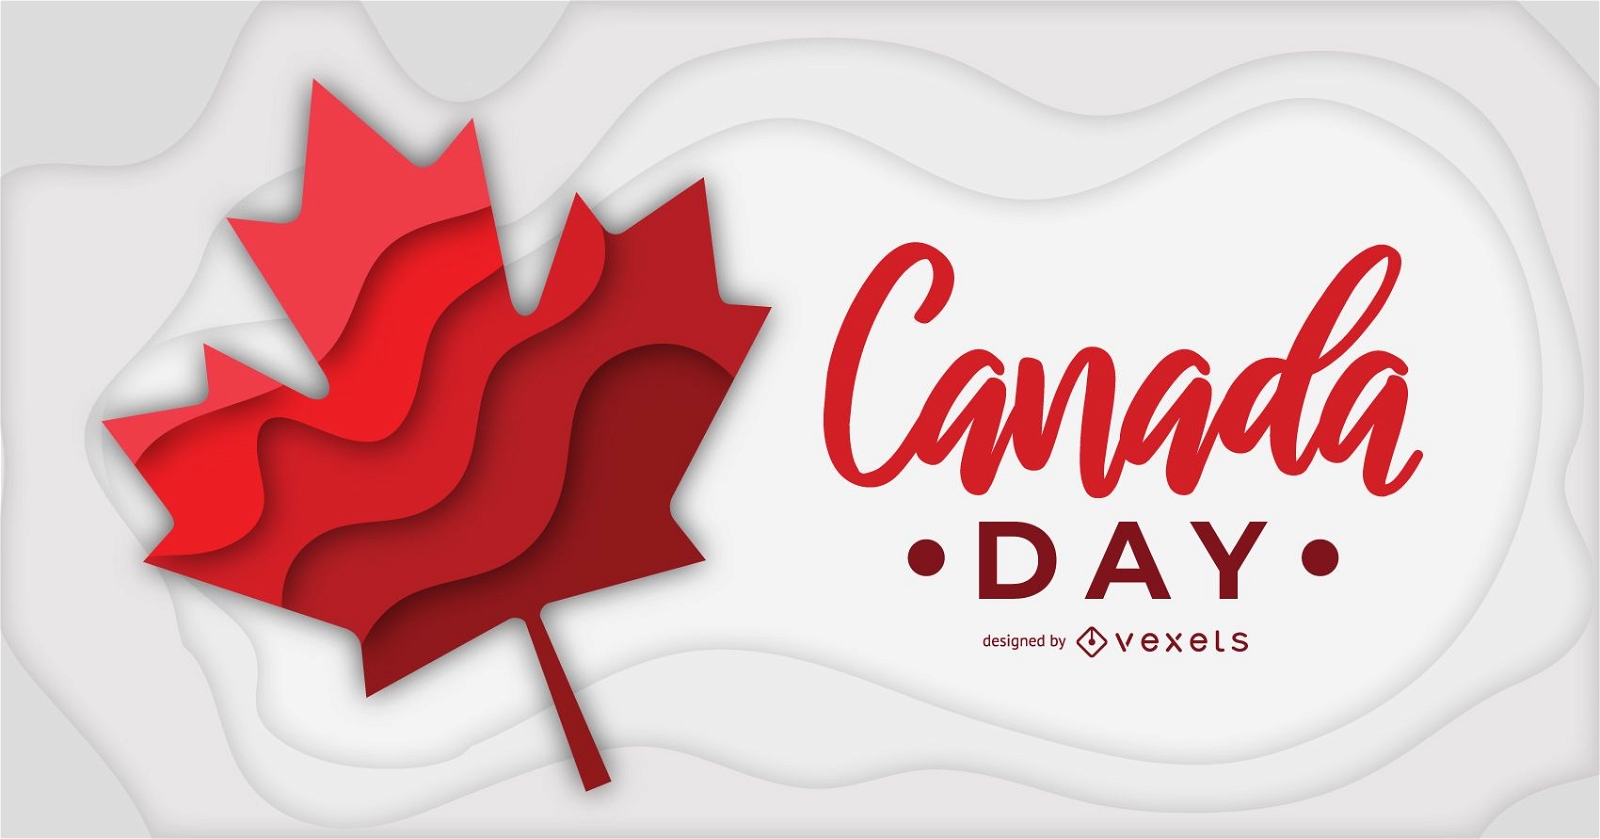 Banner do Dia do Canadá